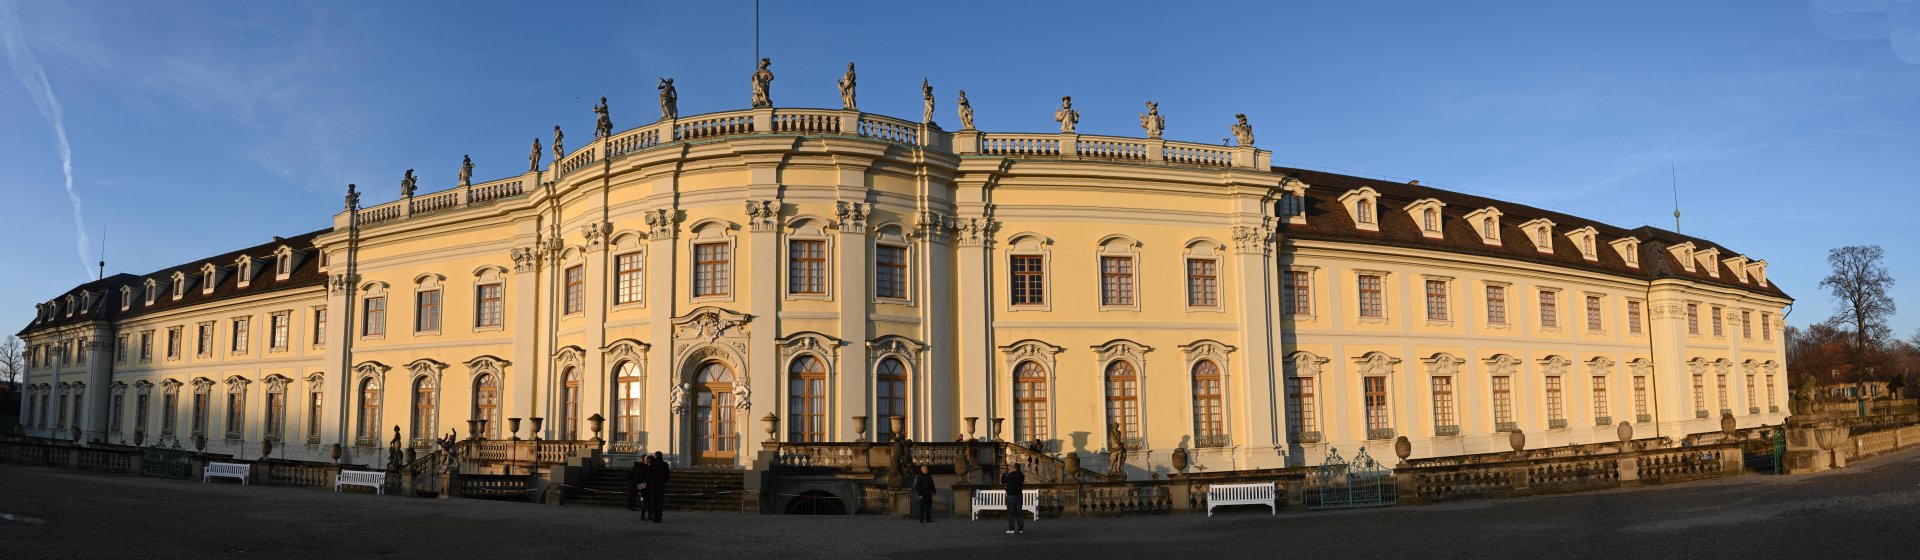 chateau de Ludwigsburg